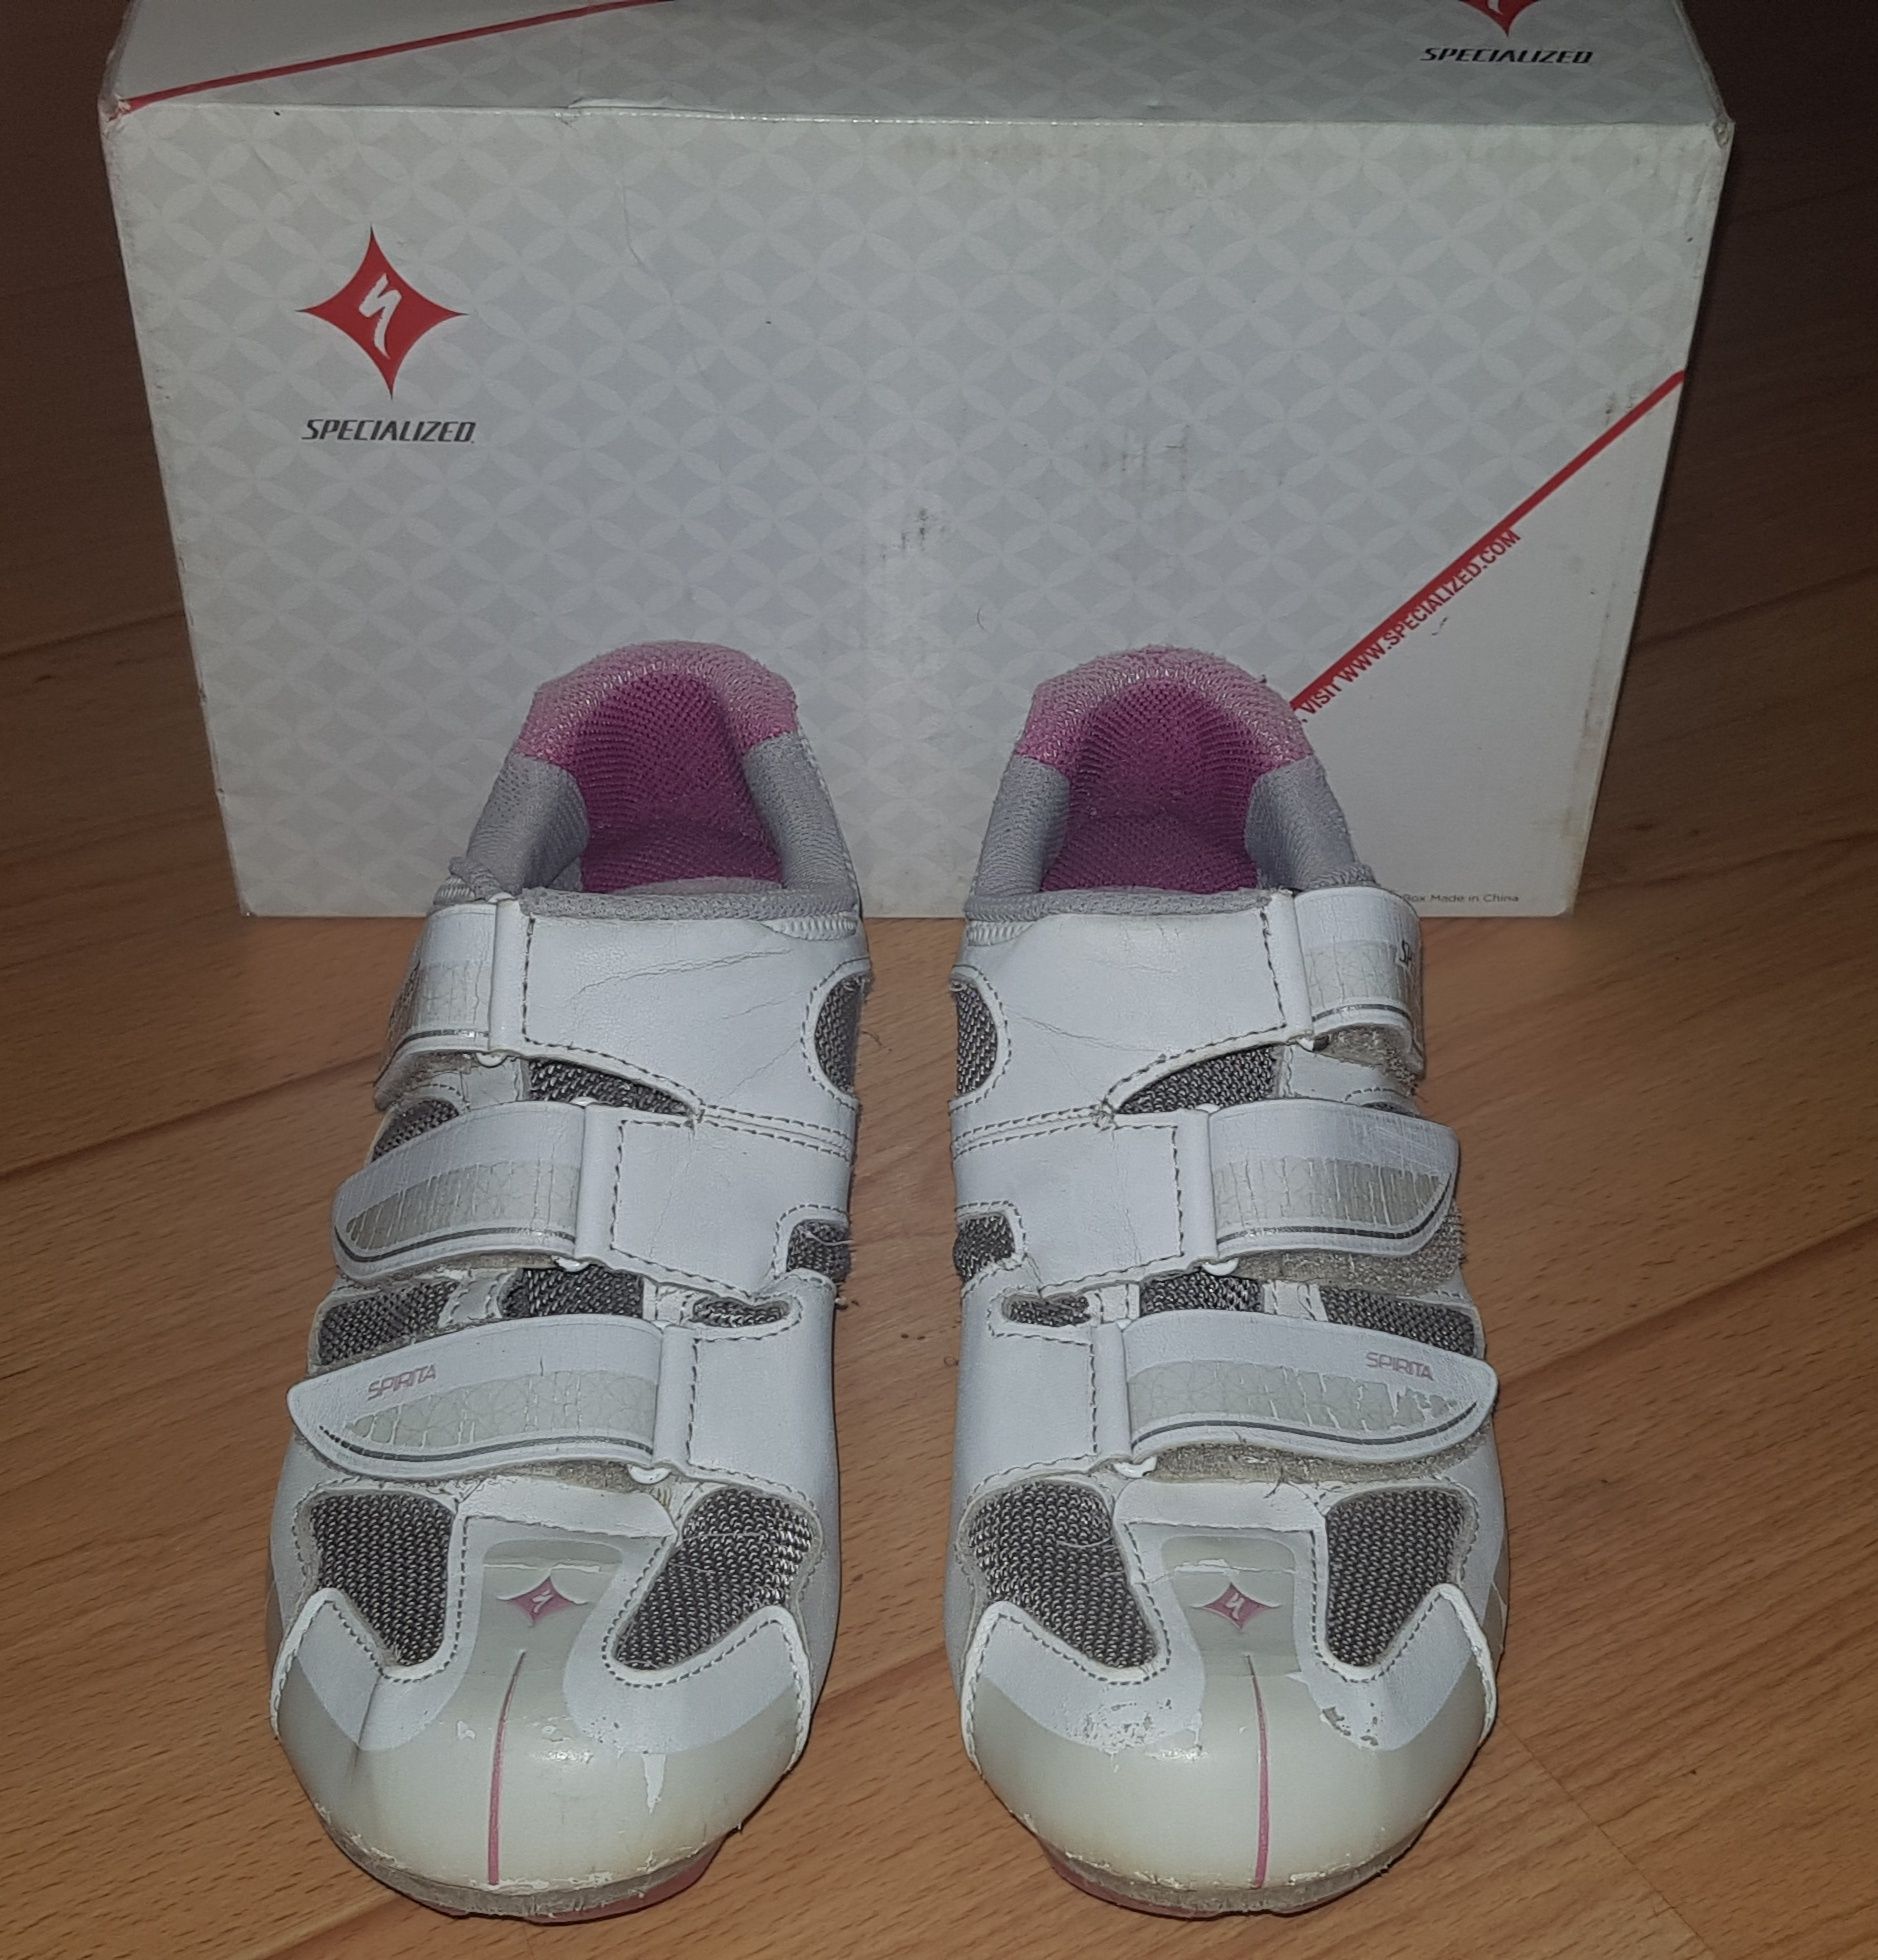 Damskie buty szosowe Specialized Spirita white/pink rozm. 40 25,5 cm